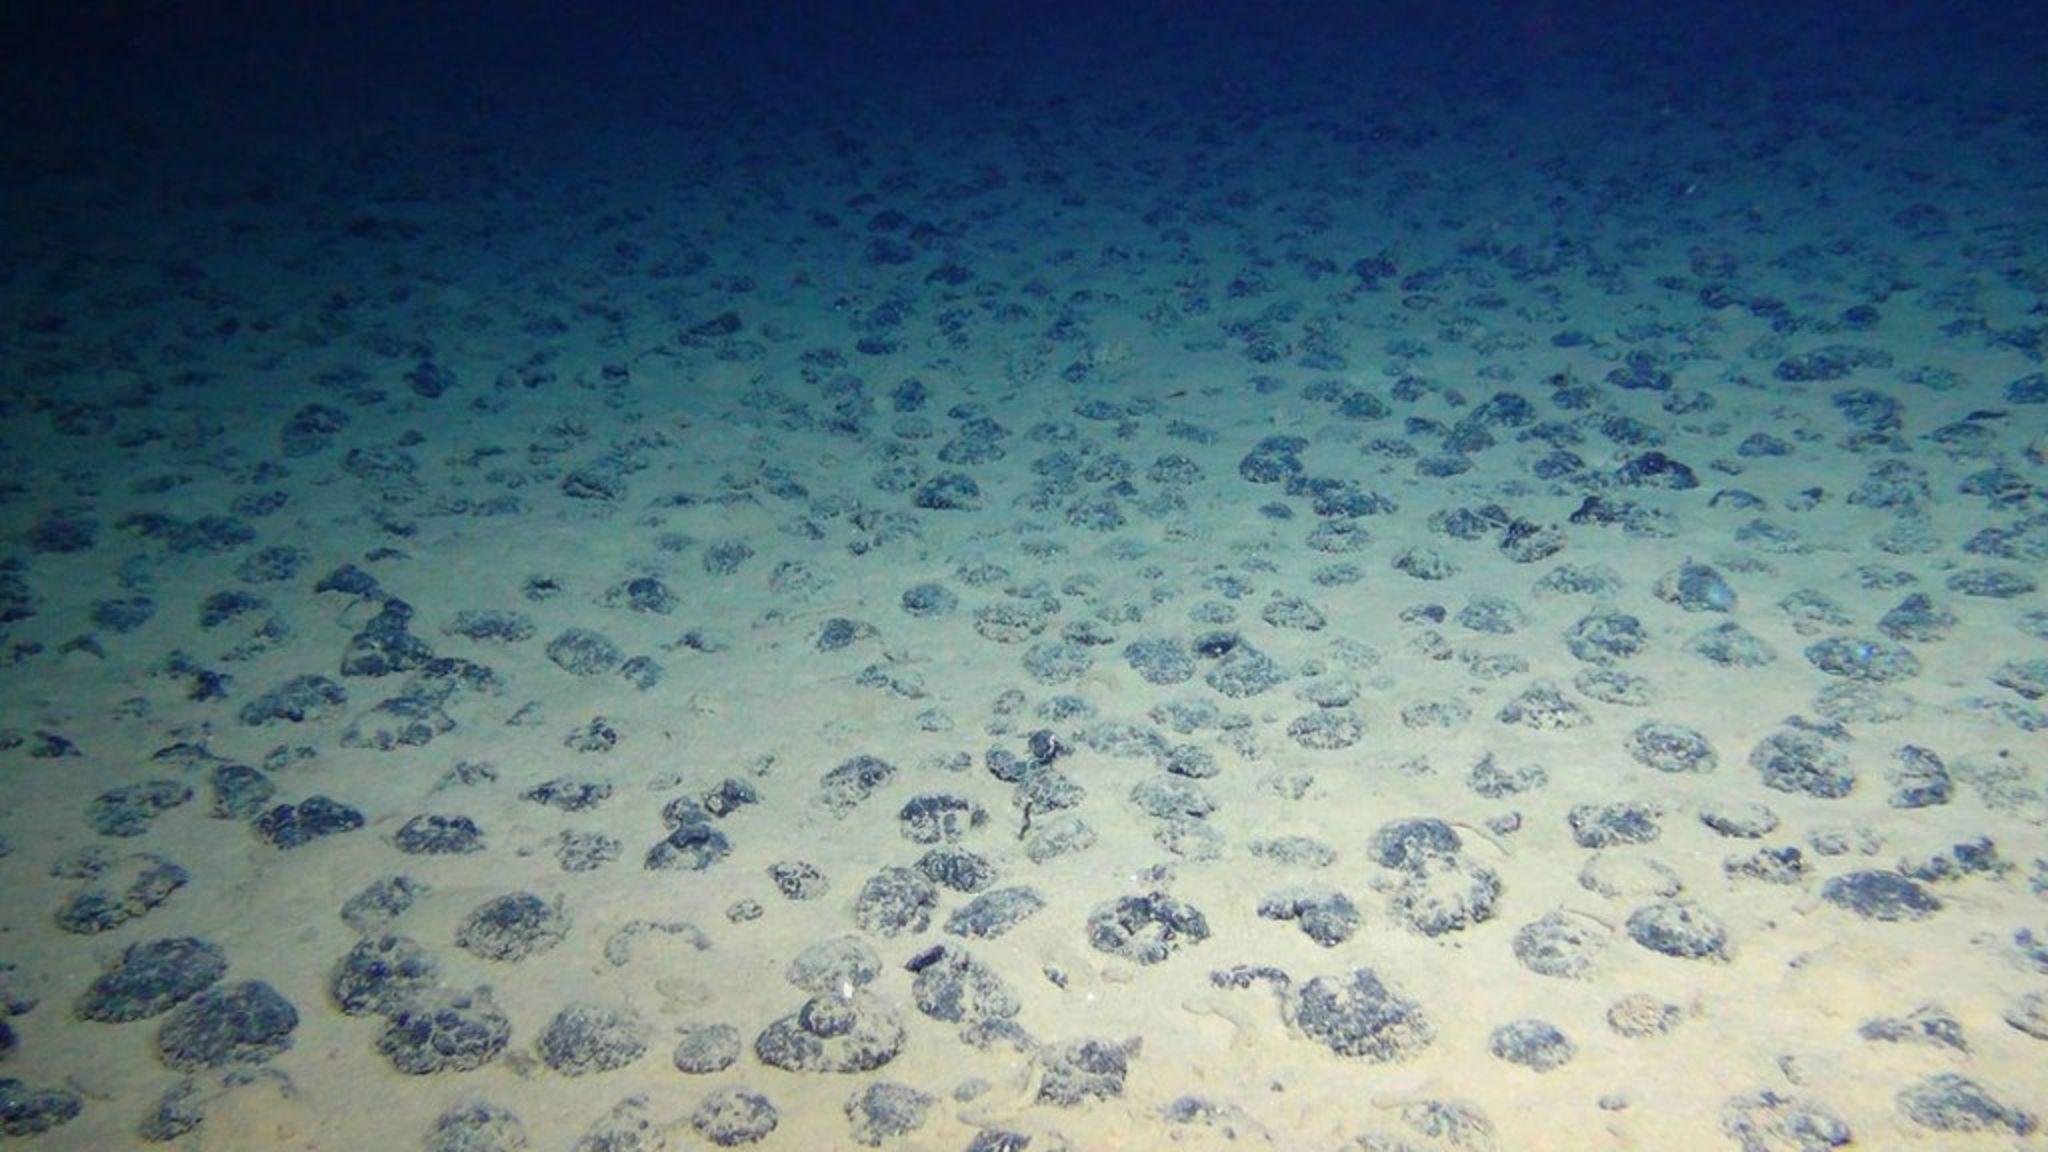 Vista del fondo oceánico y nódulos metálicos